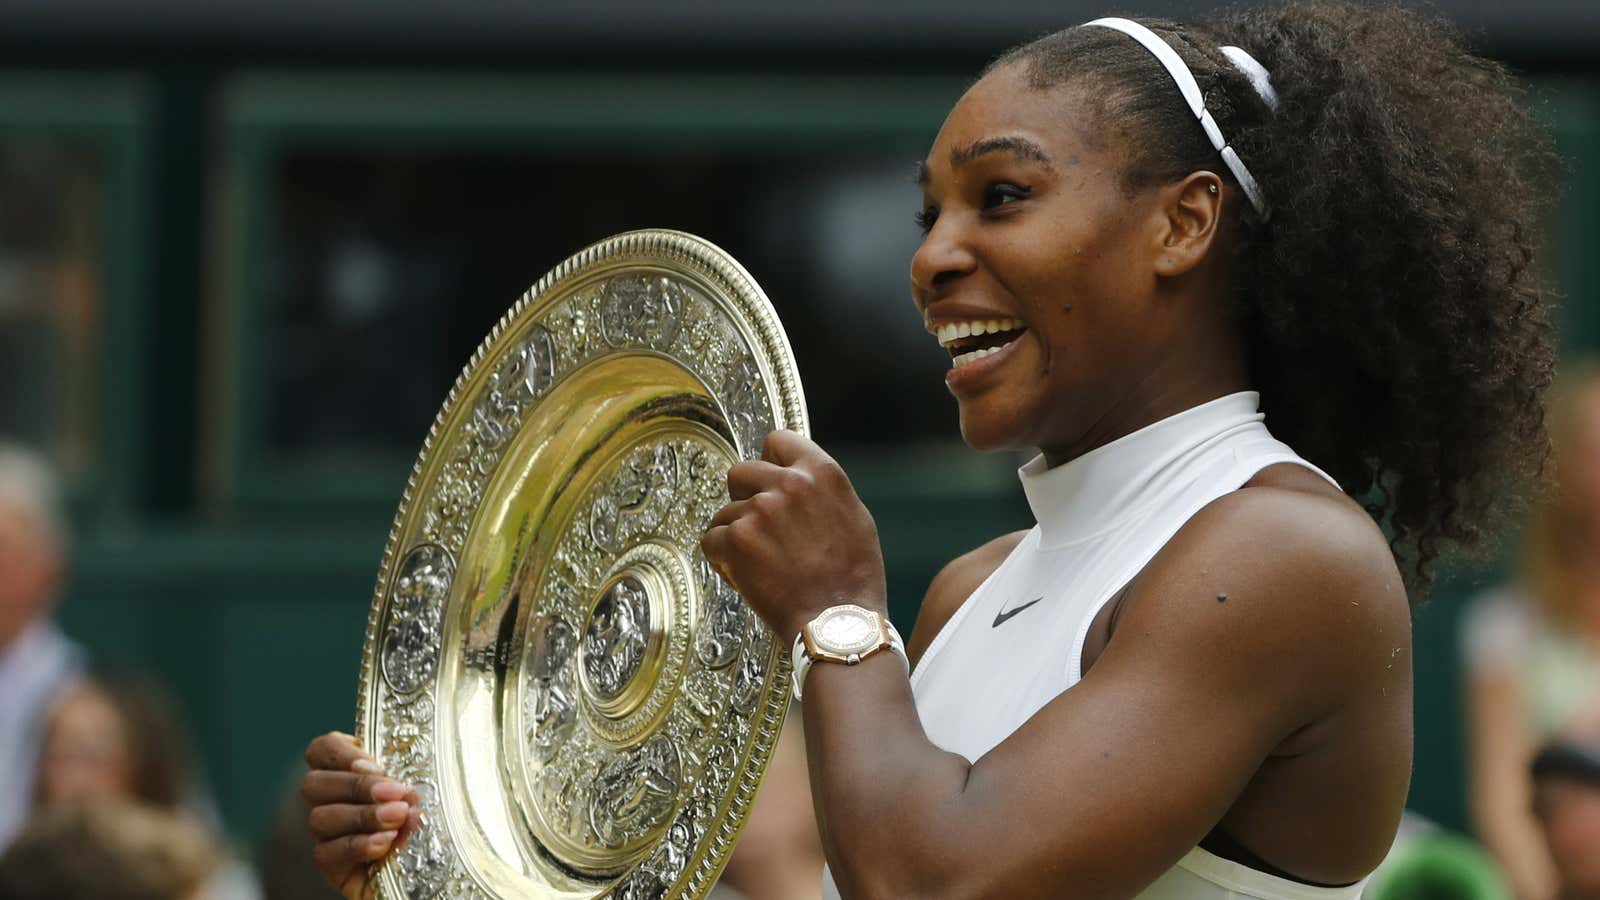 Get it, Serena.